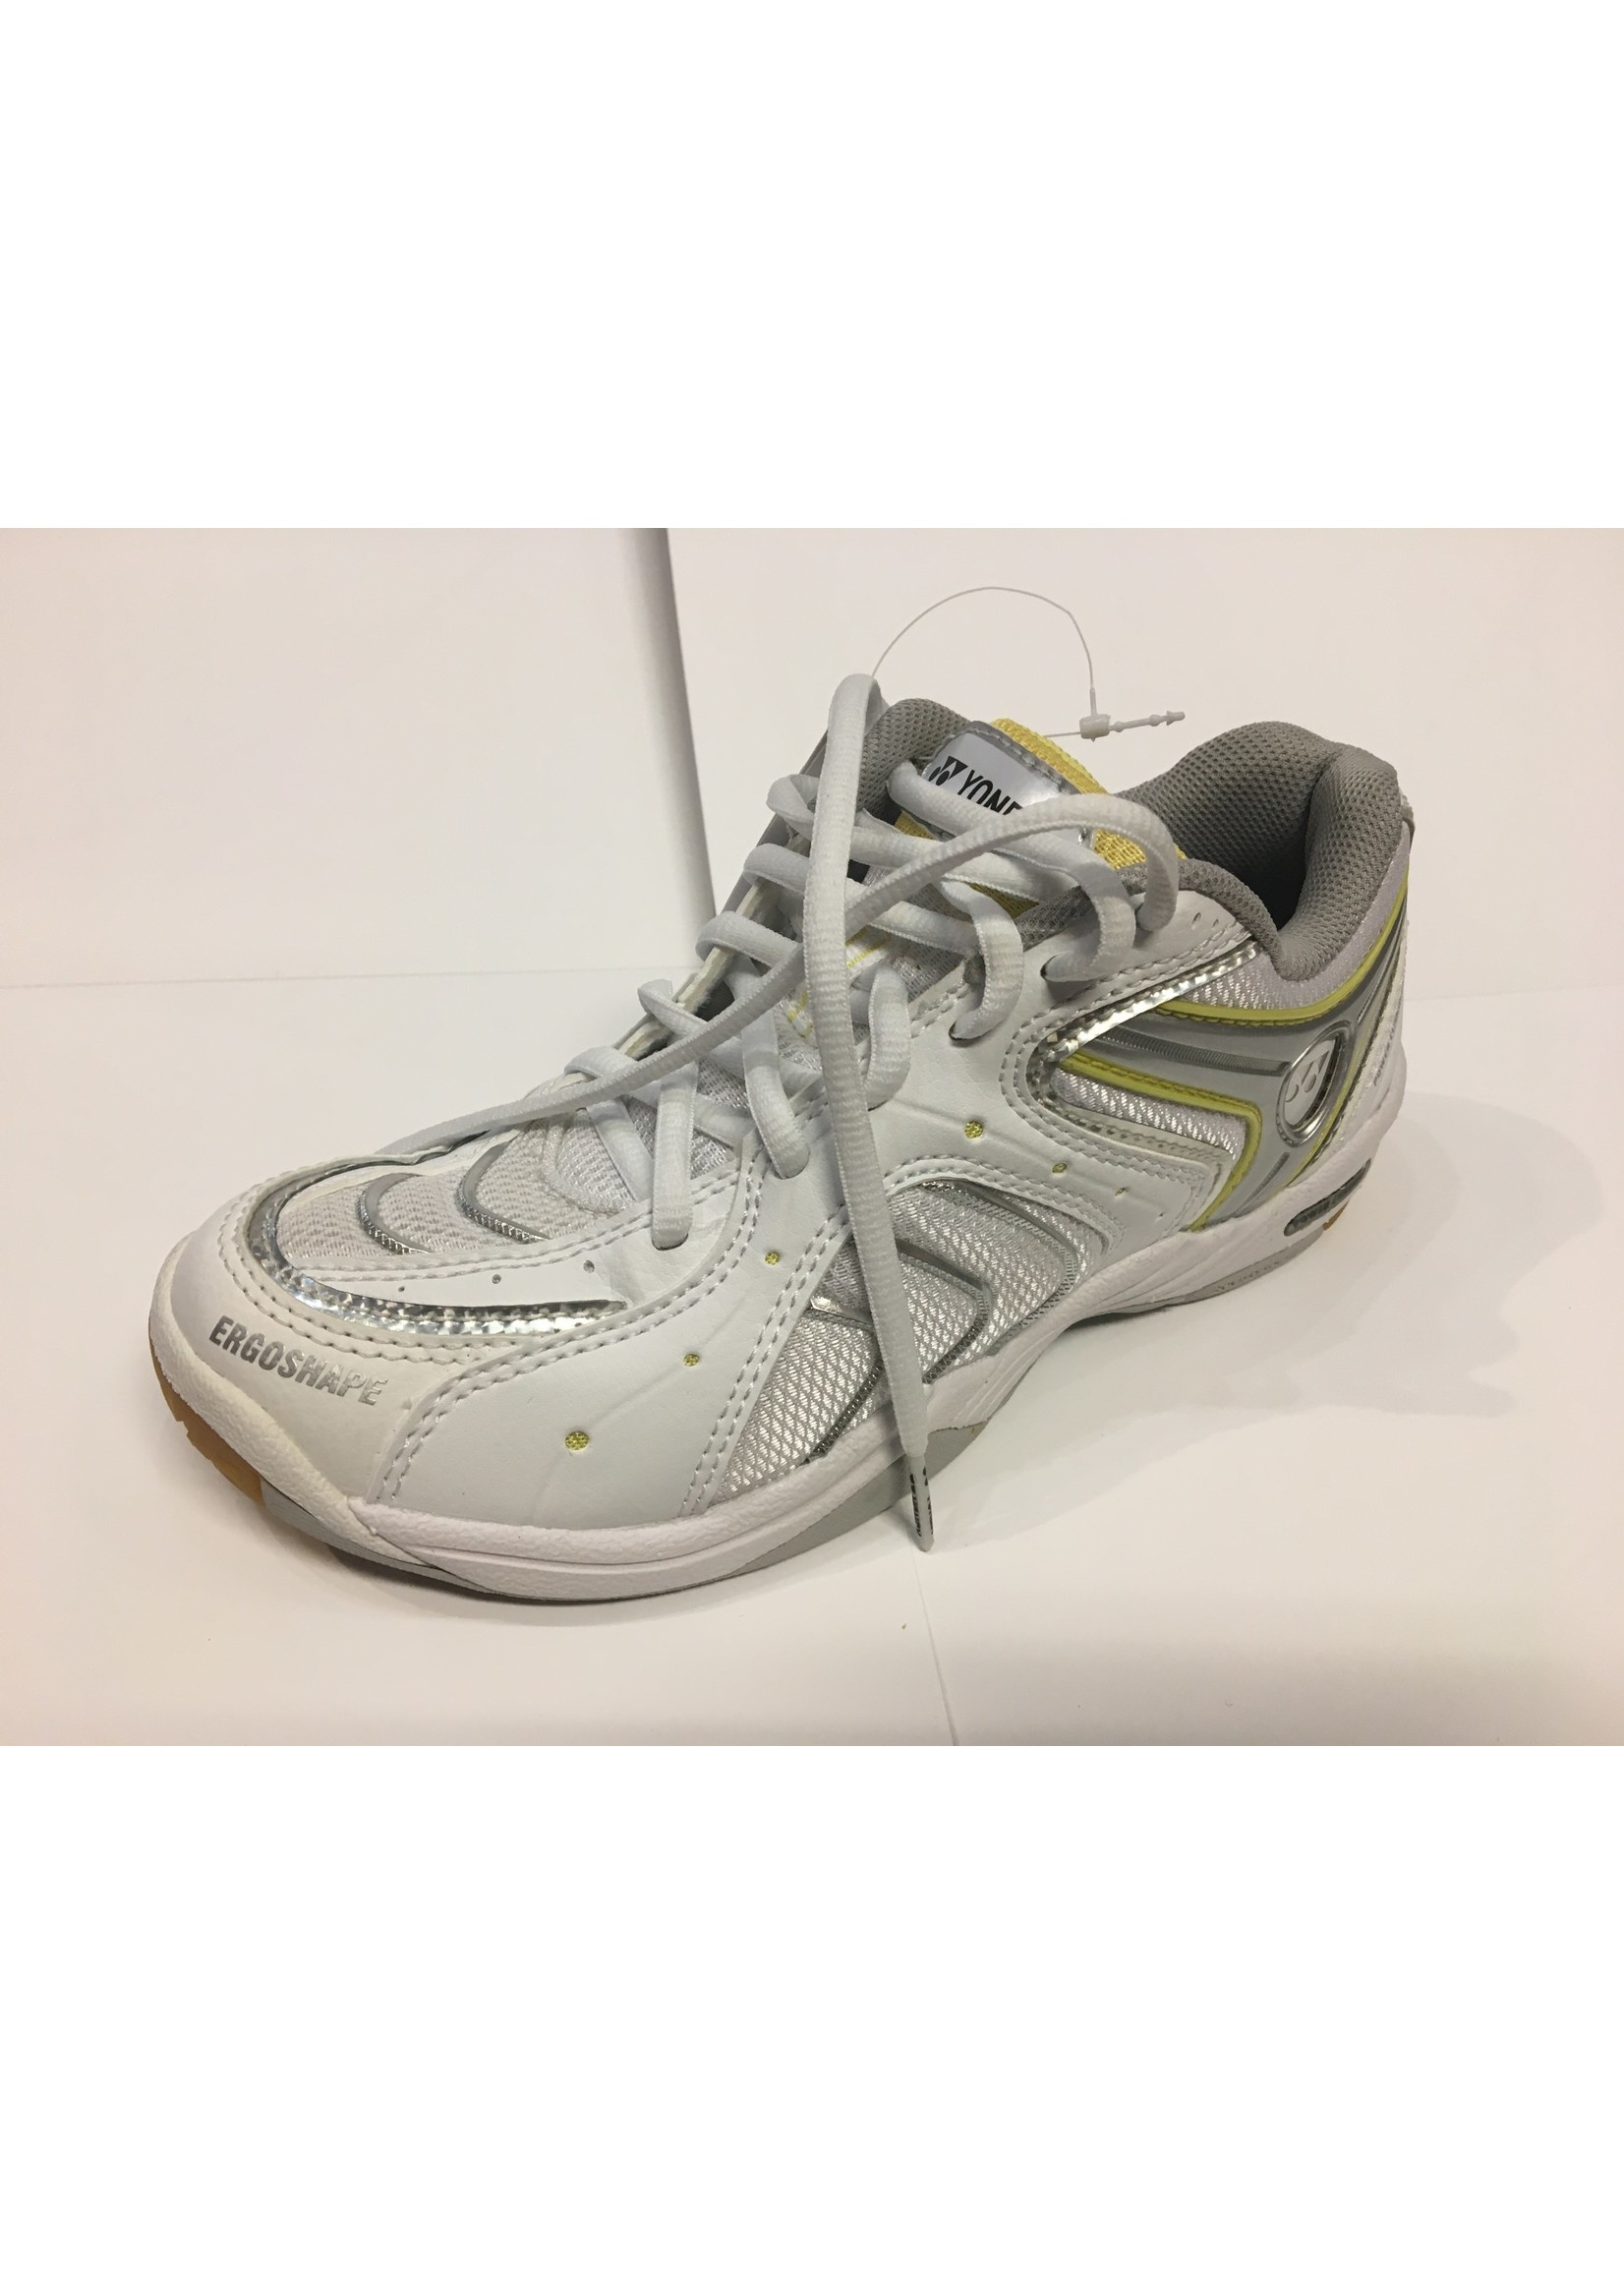 Yonex Yonex SHB 91 LX Ladies Badminton Shoe - 1 pair only (size 2.5)